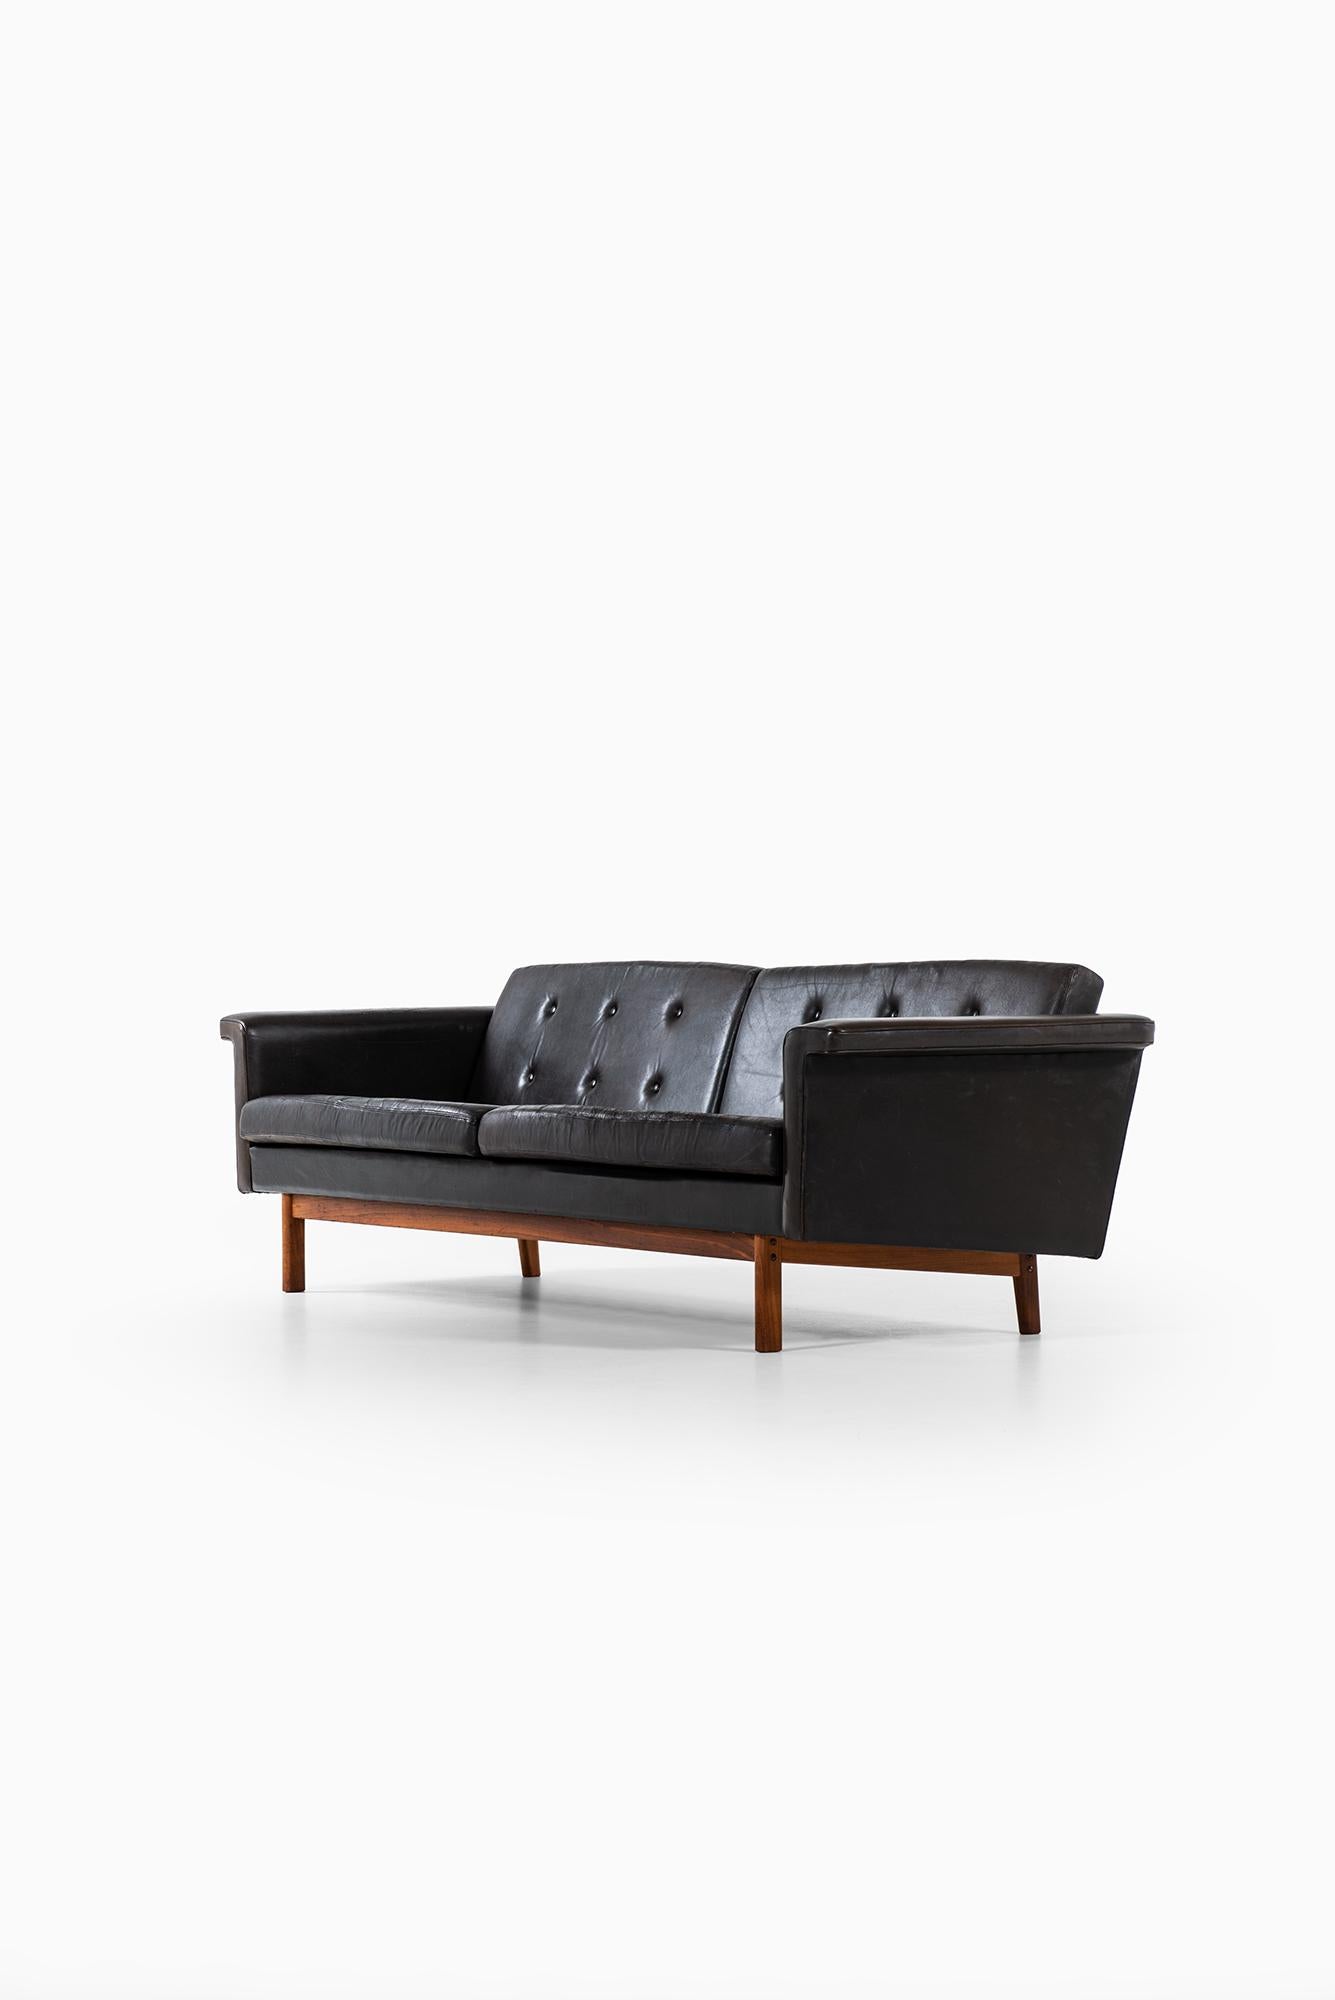 Mid-20th Century Karl-Erik Ekselius sofa in black leather by JOC in Sweden